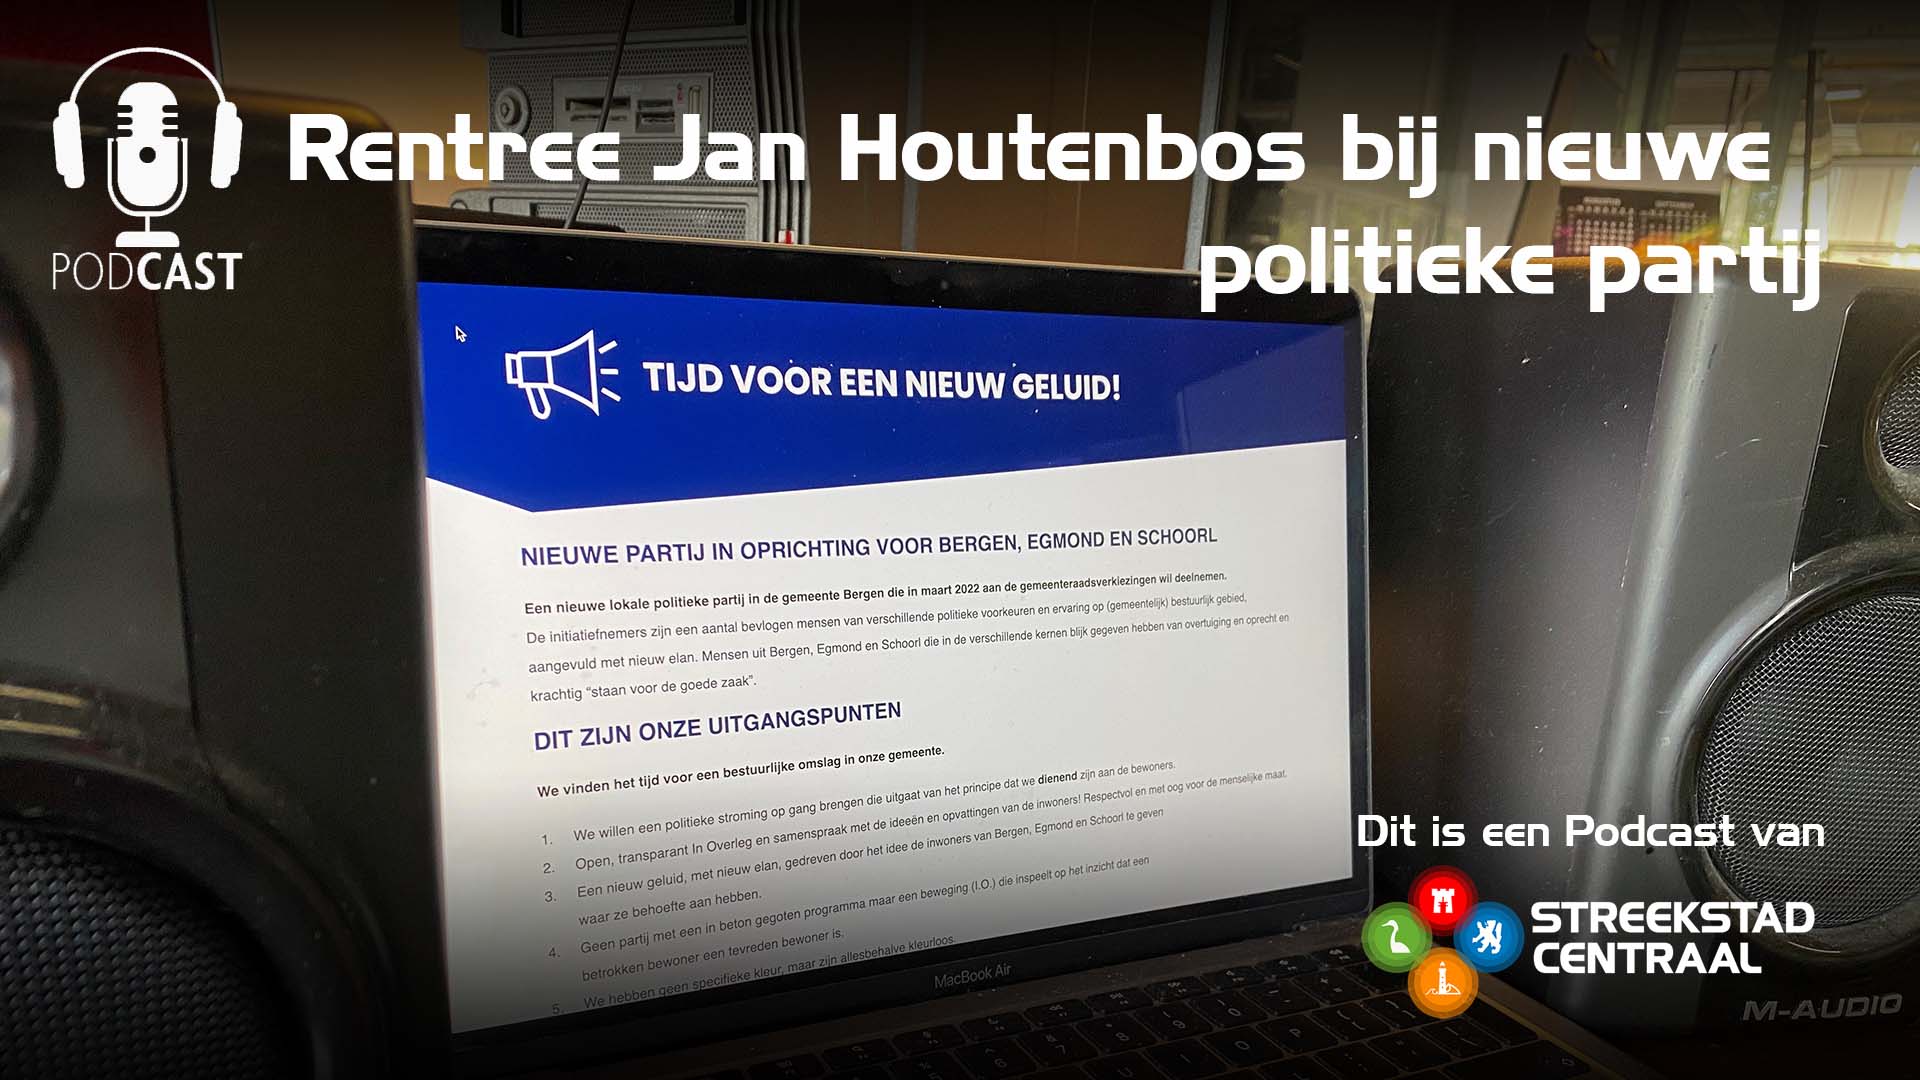 Jan Houtenbos hoopt op rentree in lokale politiek via nieuwe politieke partij